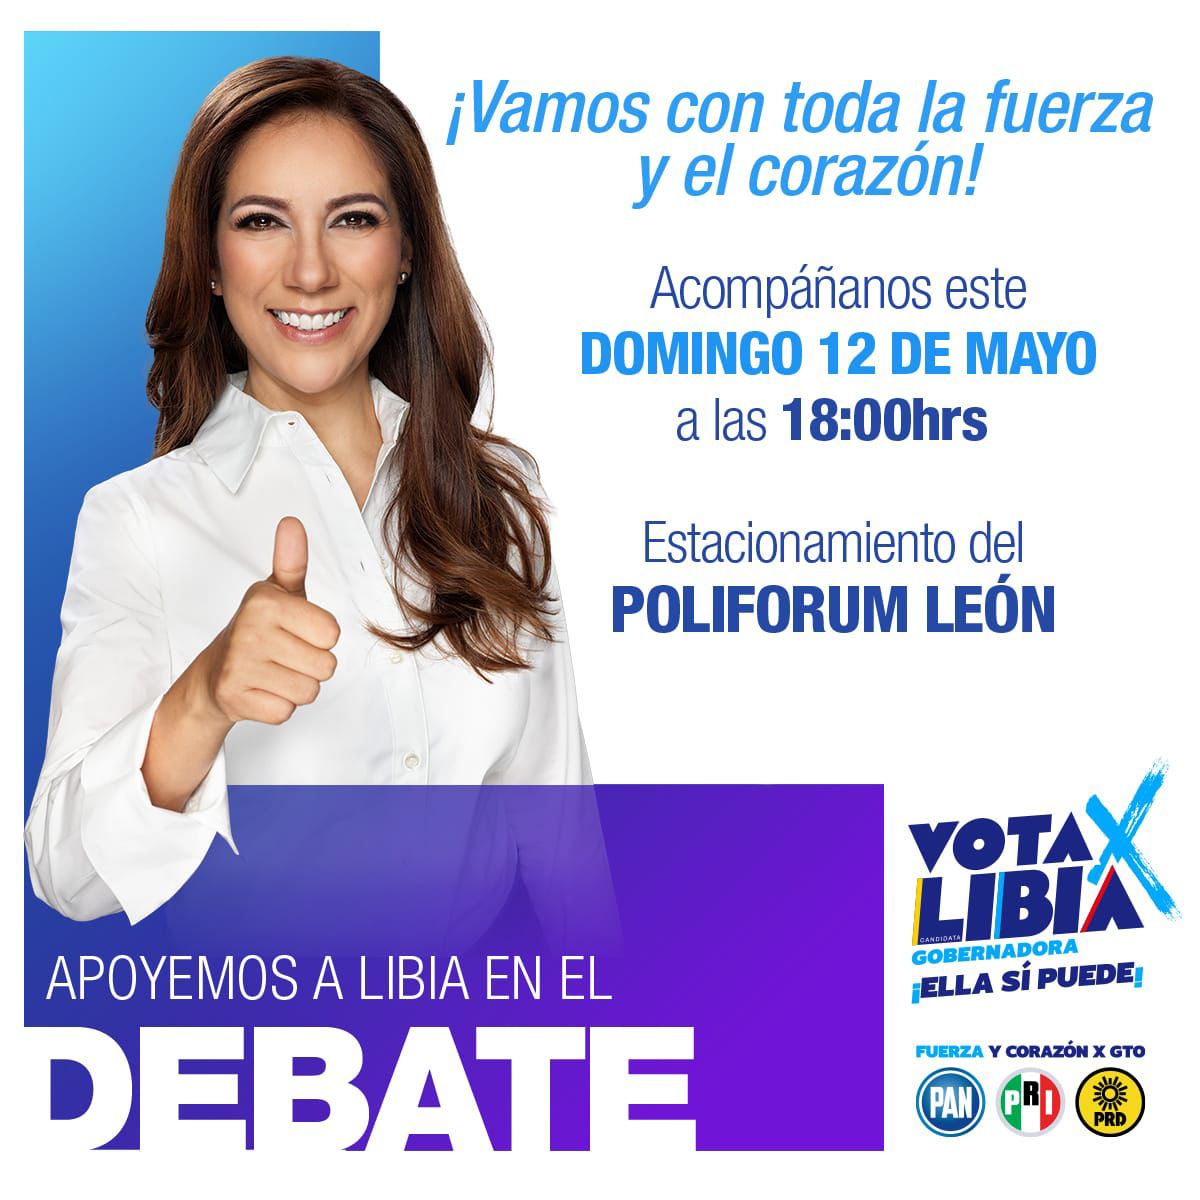 #LaBuenaEsLibia y #ClaroQuePodemos echarle muchas porras en el #debate de mañana; te esperamos en el estacionamiento de Poliforum León a las 6 de la tarde ¡No faltes! #VotaLibia #VotaPAN 

#AdrianaCandidataAlSenado 💪🏻🩷